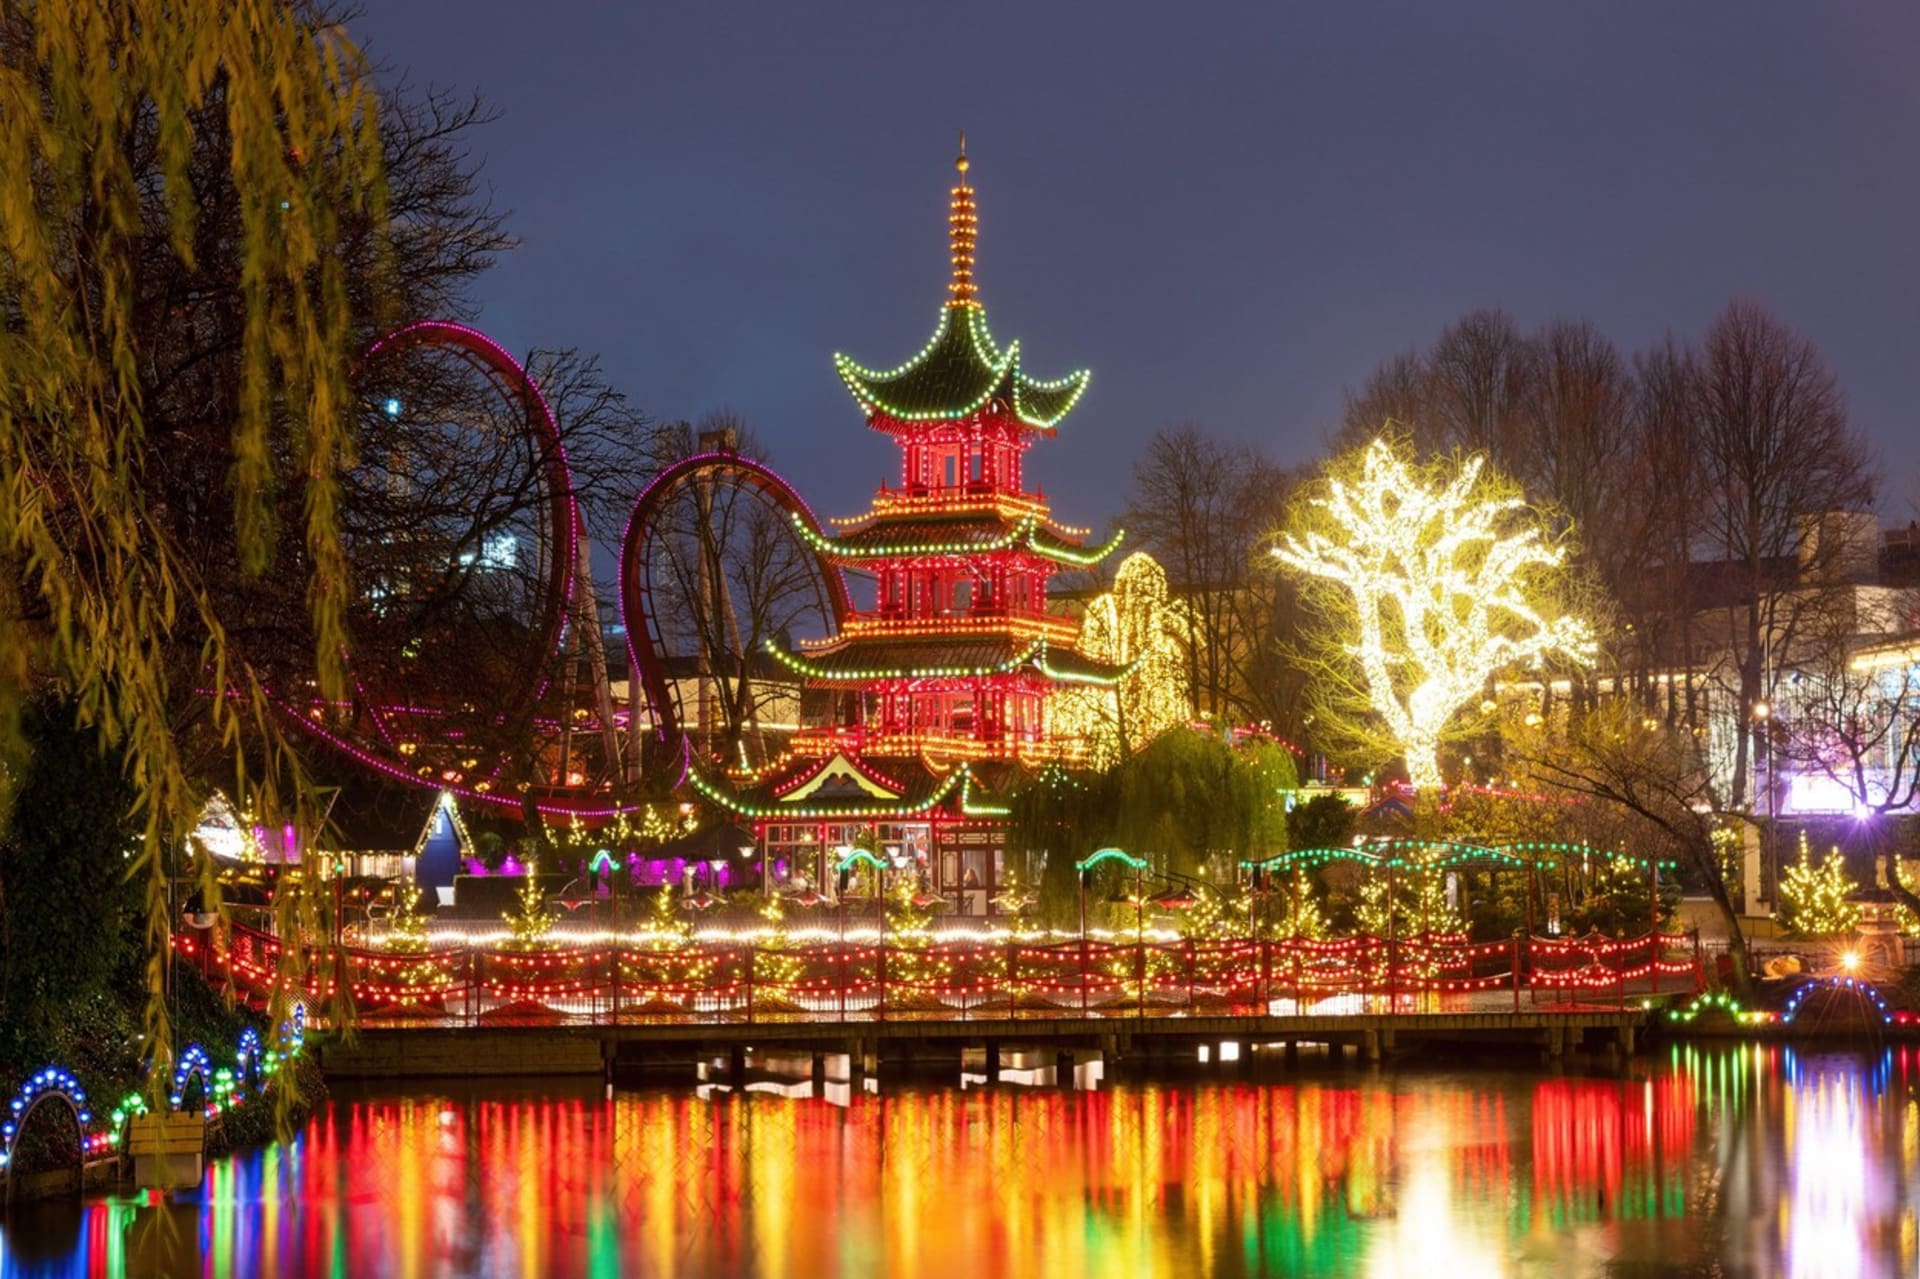 Zábavní park Tivoli Gardens v centru Kodaně se každoročně v předvánočním čase proměňuje v nádhernou pohádku.